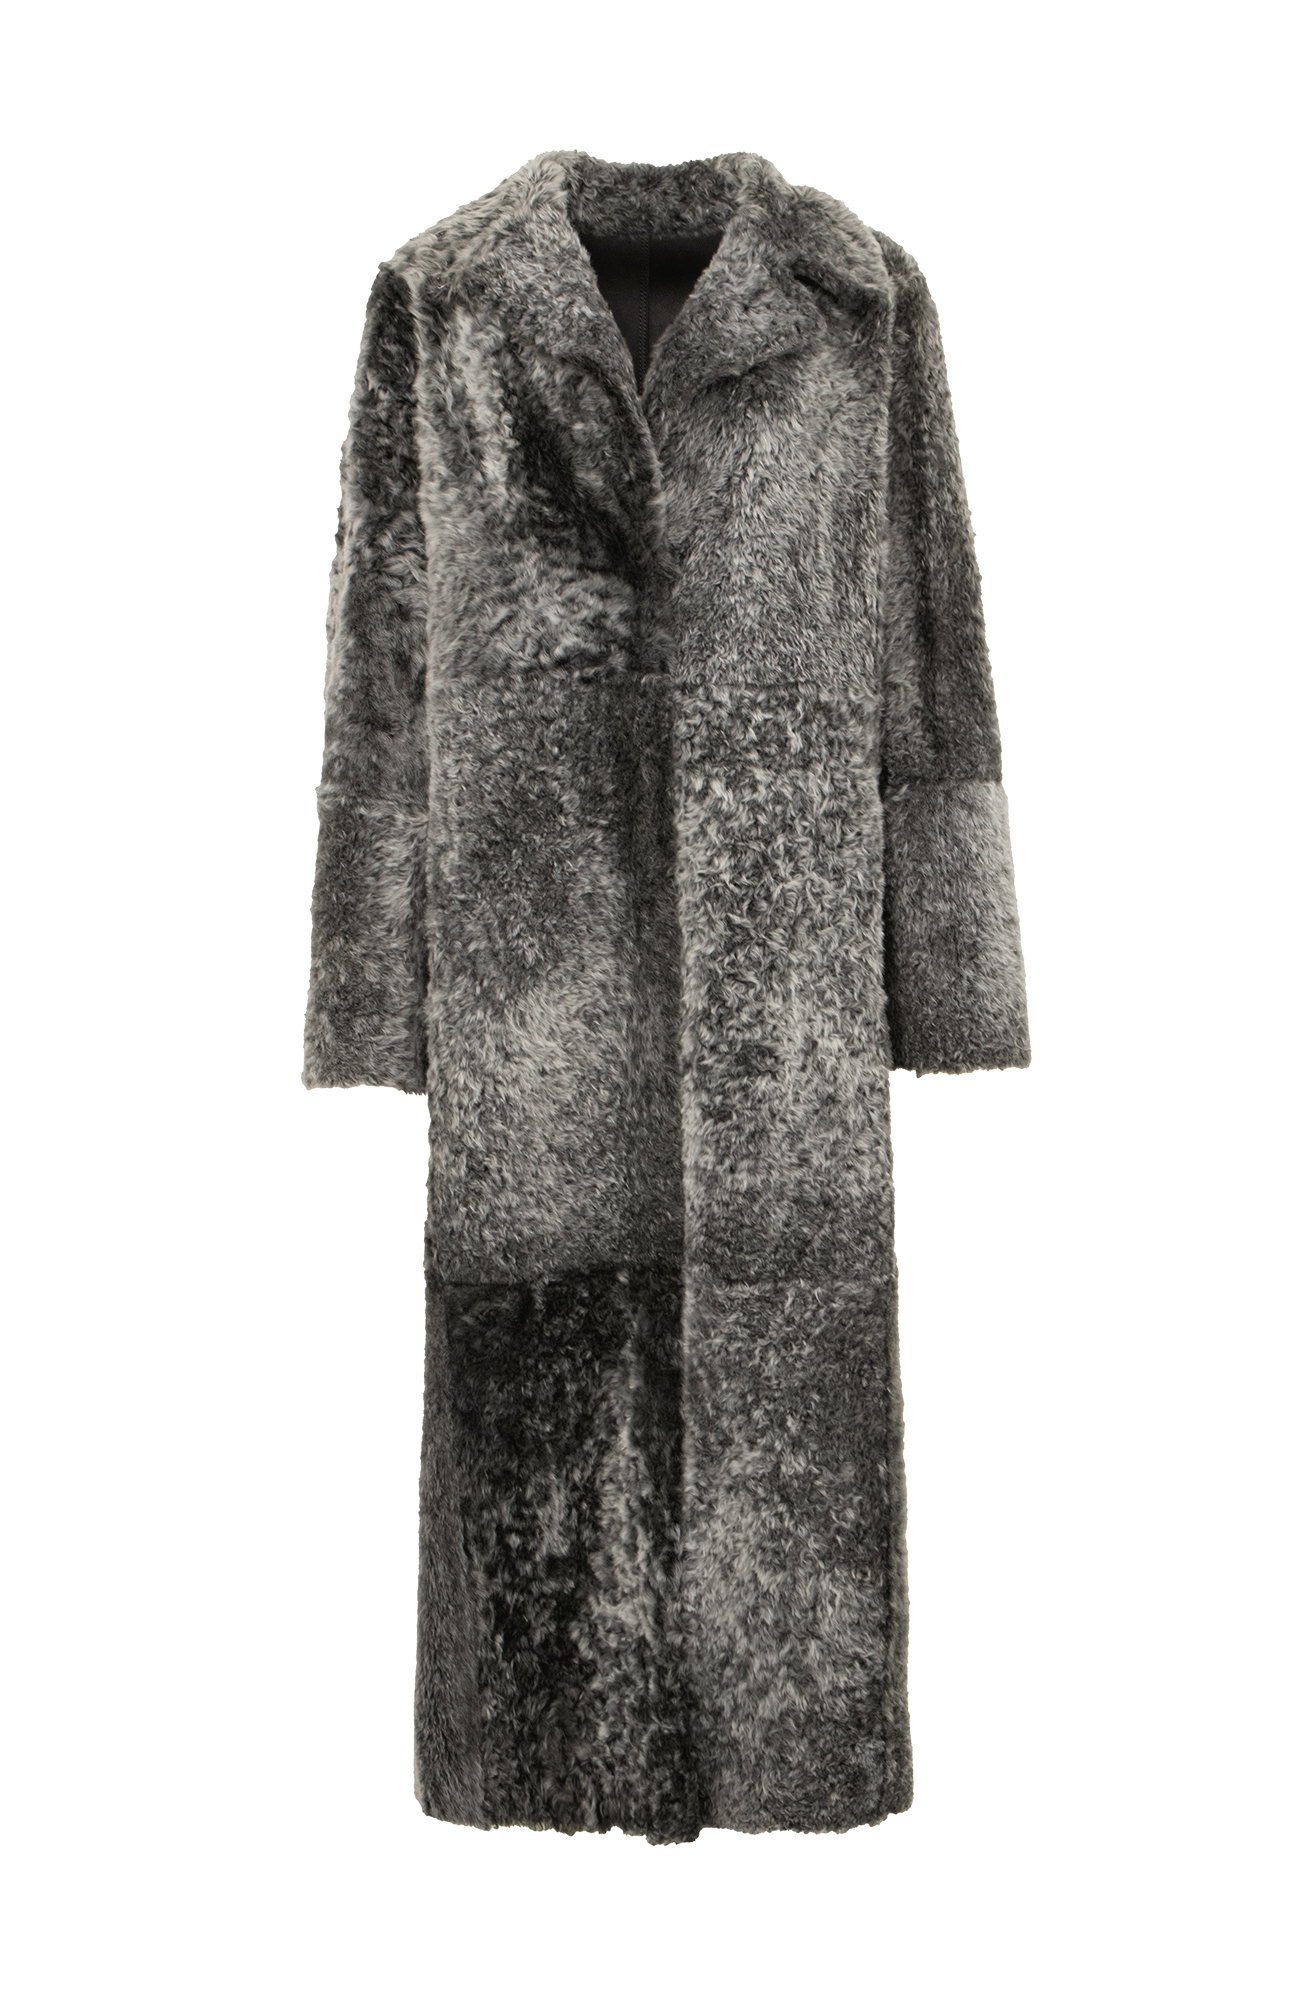 Lammfell Mantel schwarz grau von vorne